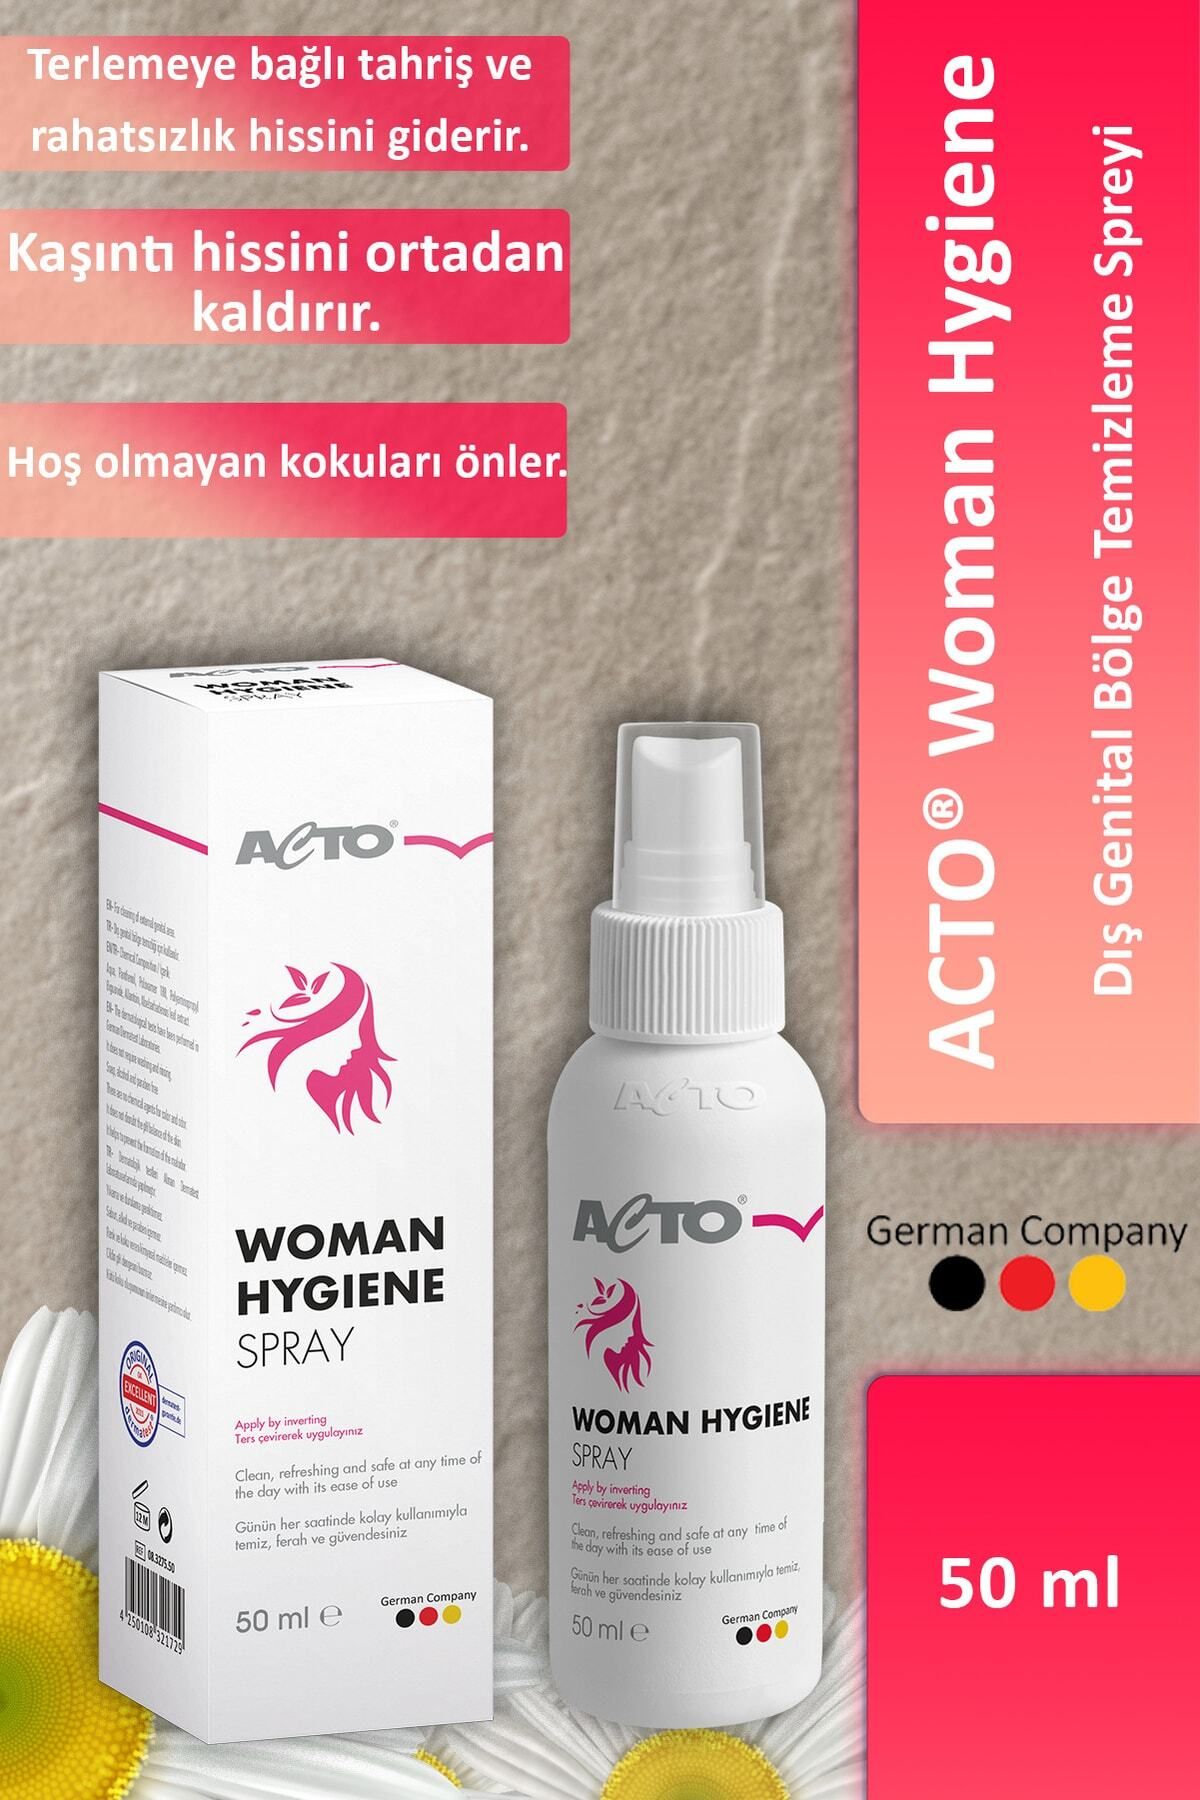 Acto Woman Hygiene Spray Dış Genital Alan Için Temizleme Spreyi 50 ml